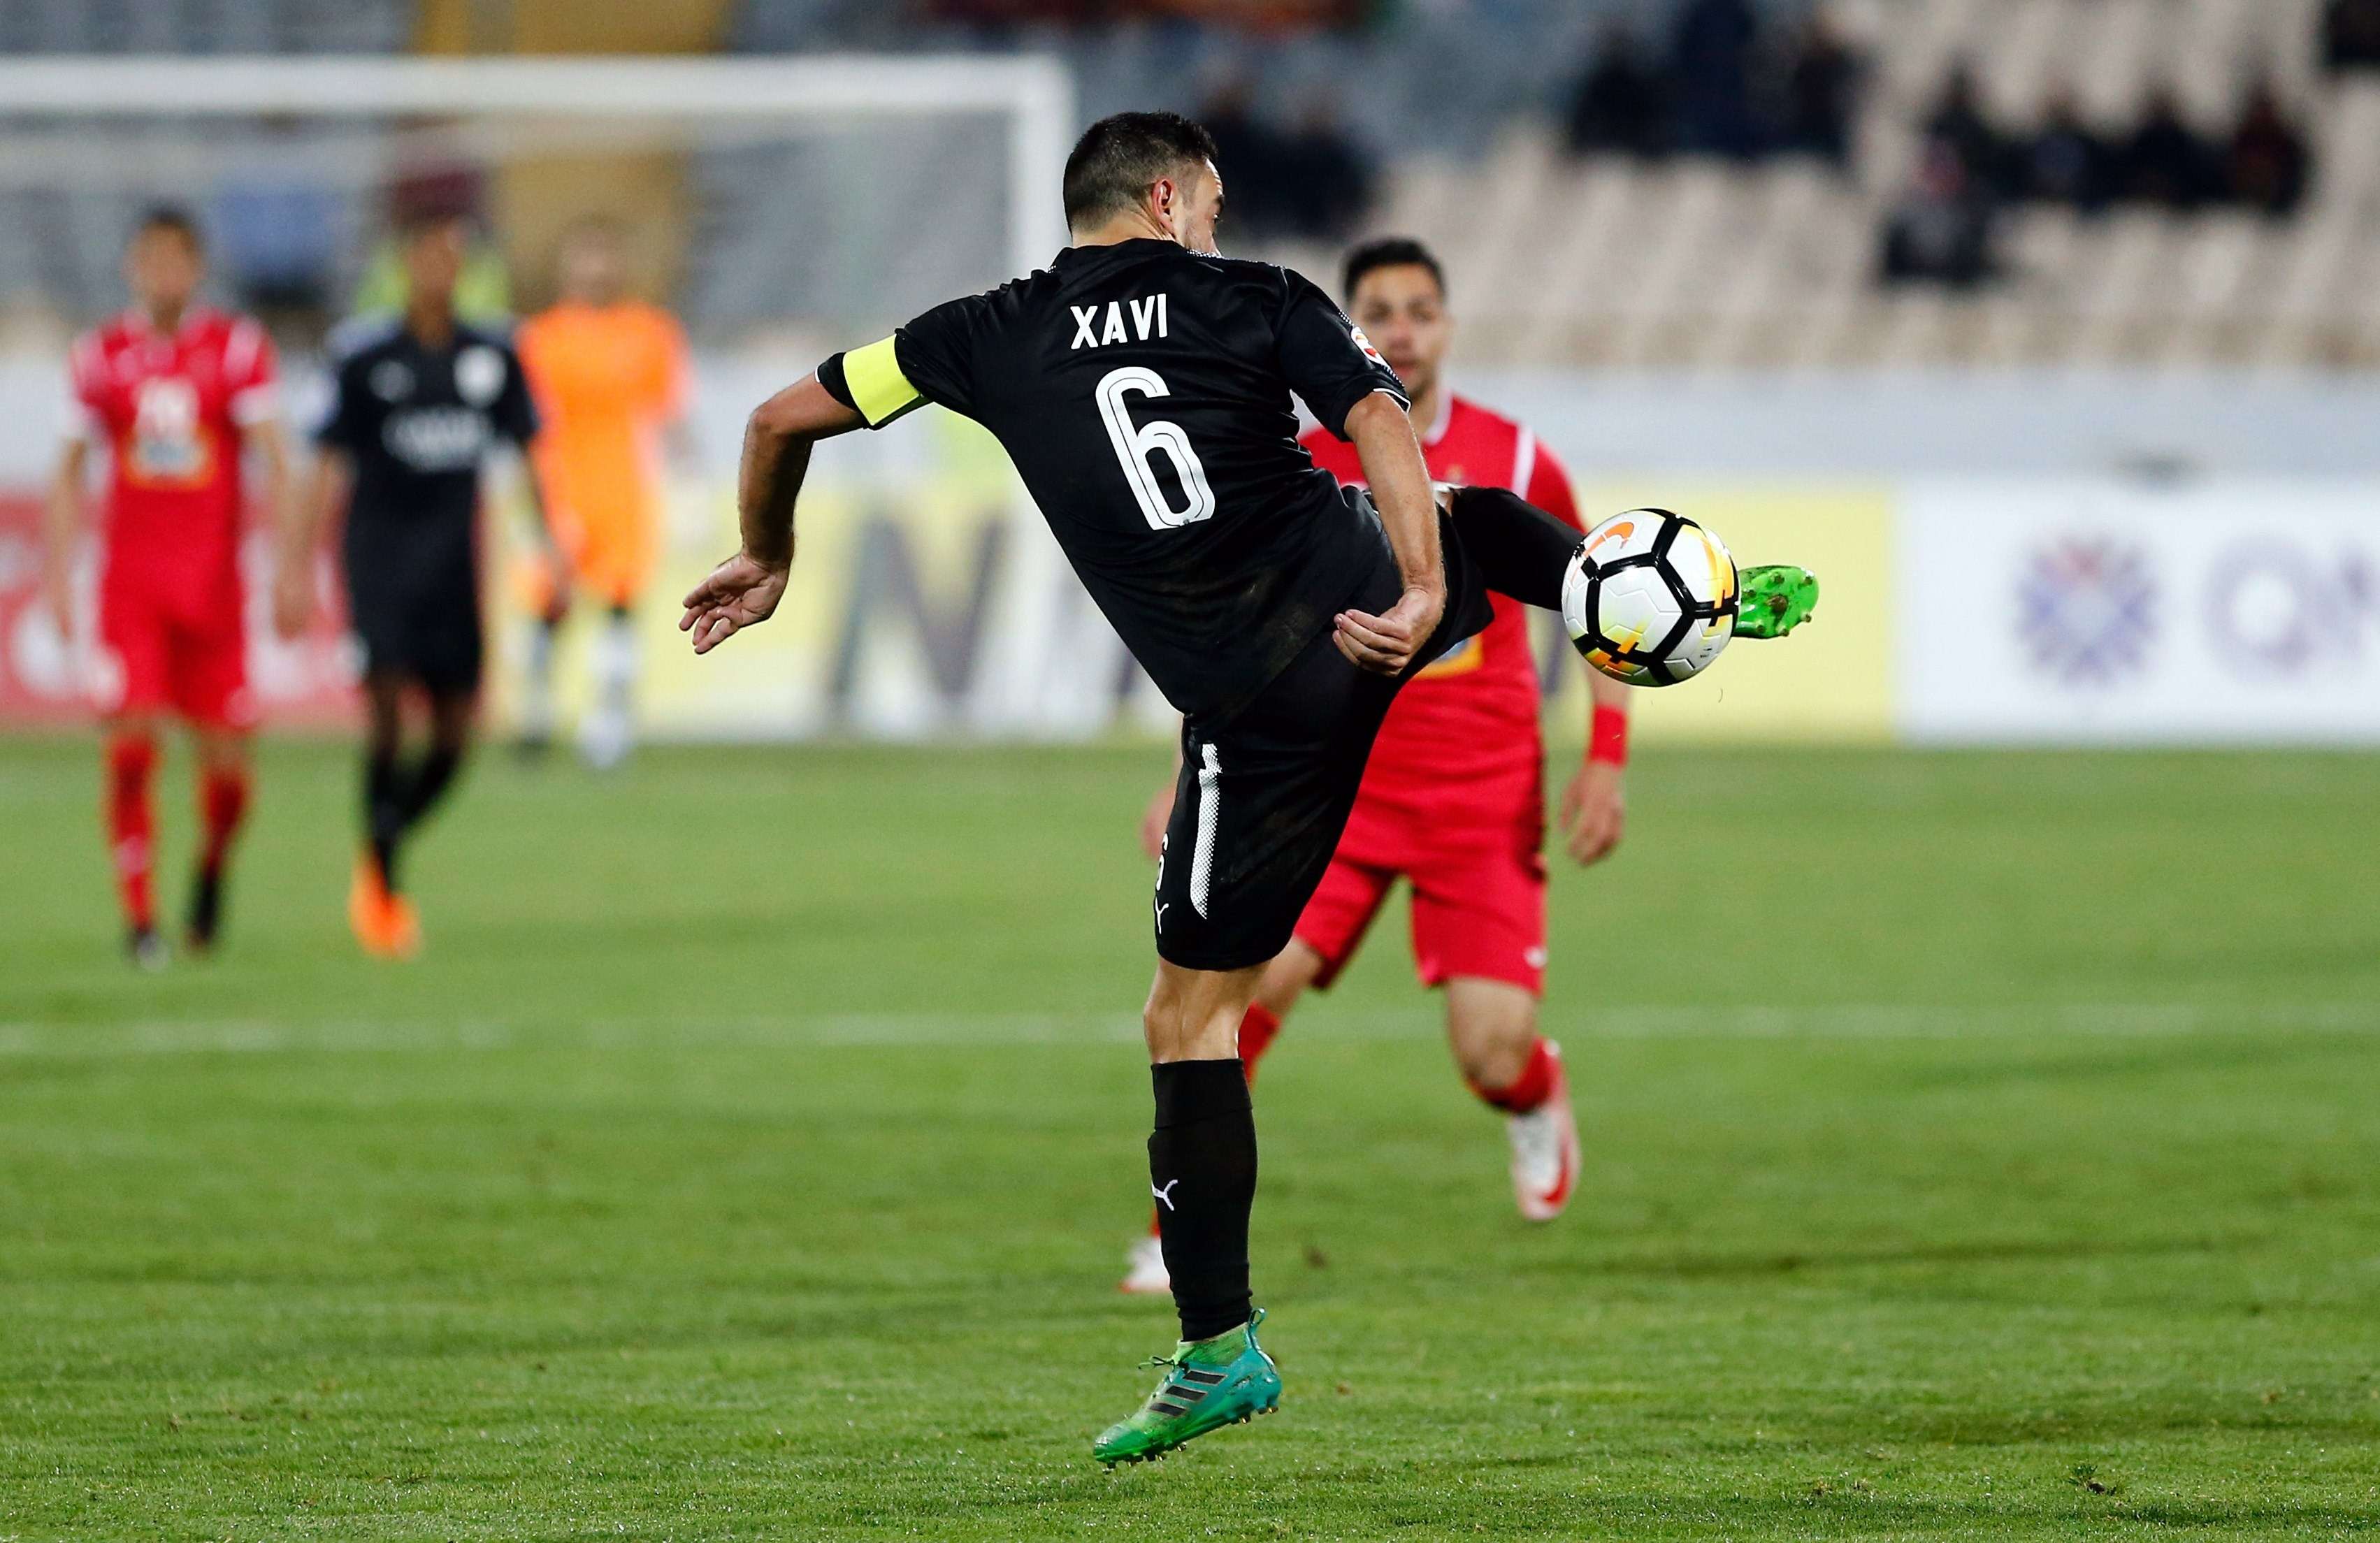  El centrocampista español del Al Sadd Xavi Hernández (c), en acción durante un partido. / EFE